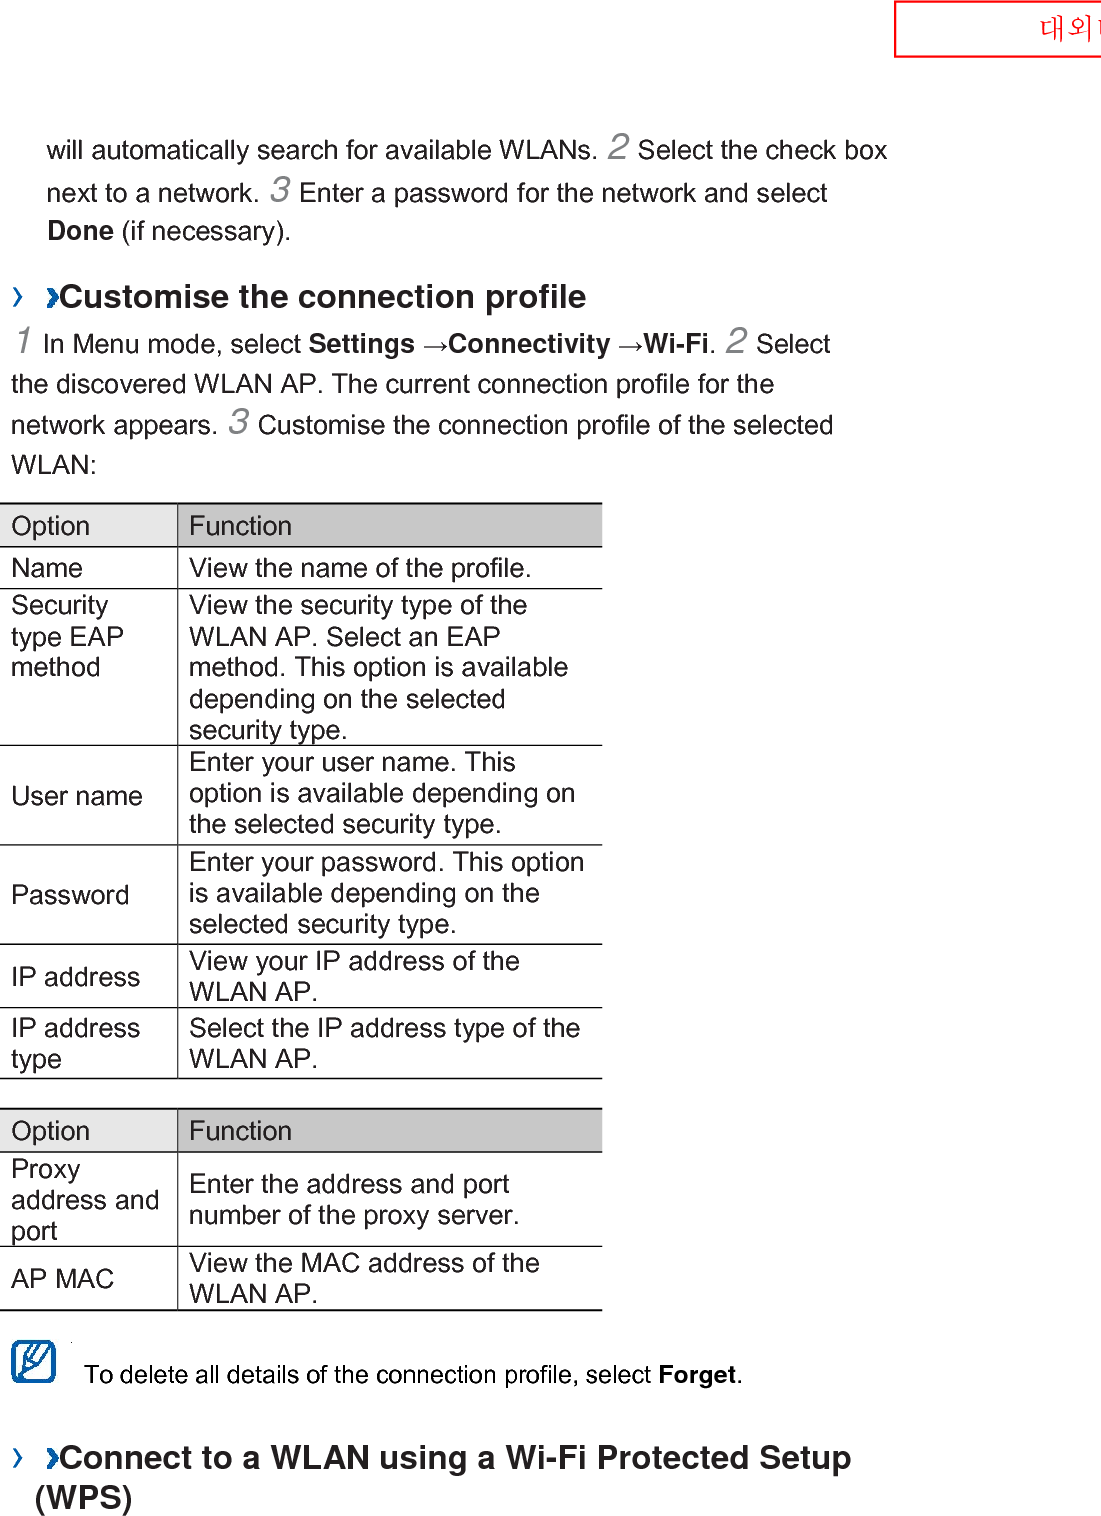  대외비 will automatically search for available WLANs. 2 Select the check box next to a network. 3 Enter a password for the network and select Done (if necessary).   ›  Customise the connection profile   1 In Menu mode, select Settings →Connectivity →Wi-Fi. 2 Select the discovered WLAN AP. The current connection profile for the network appears. 3 Customise the connection profile of the selected WLAN:   Option    Function   Name   View the name of the profile.   Security type EAP method   View the security type of the WLAN AP. Select an EAP method. This option is available depending on the selected security type.   User name   Enter your user name. This option is available depending on the selected security type.   Password   Enter your password. This option is available depending on the selected security type.   IP address   View your IP address of the WLAN AP.   IP address type   Select the IP address type of the WLAN AP.    Option    Function   Proxy address and port   Enter the address and port number of the proxy server.   AP MAC   View the MAC address of the WLAN AP.     To delete all details of the connection profile, select Forget.   ›  Connect to a WLAN using a Wi-Fi Protected Setup (WPS)   